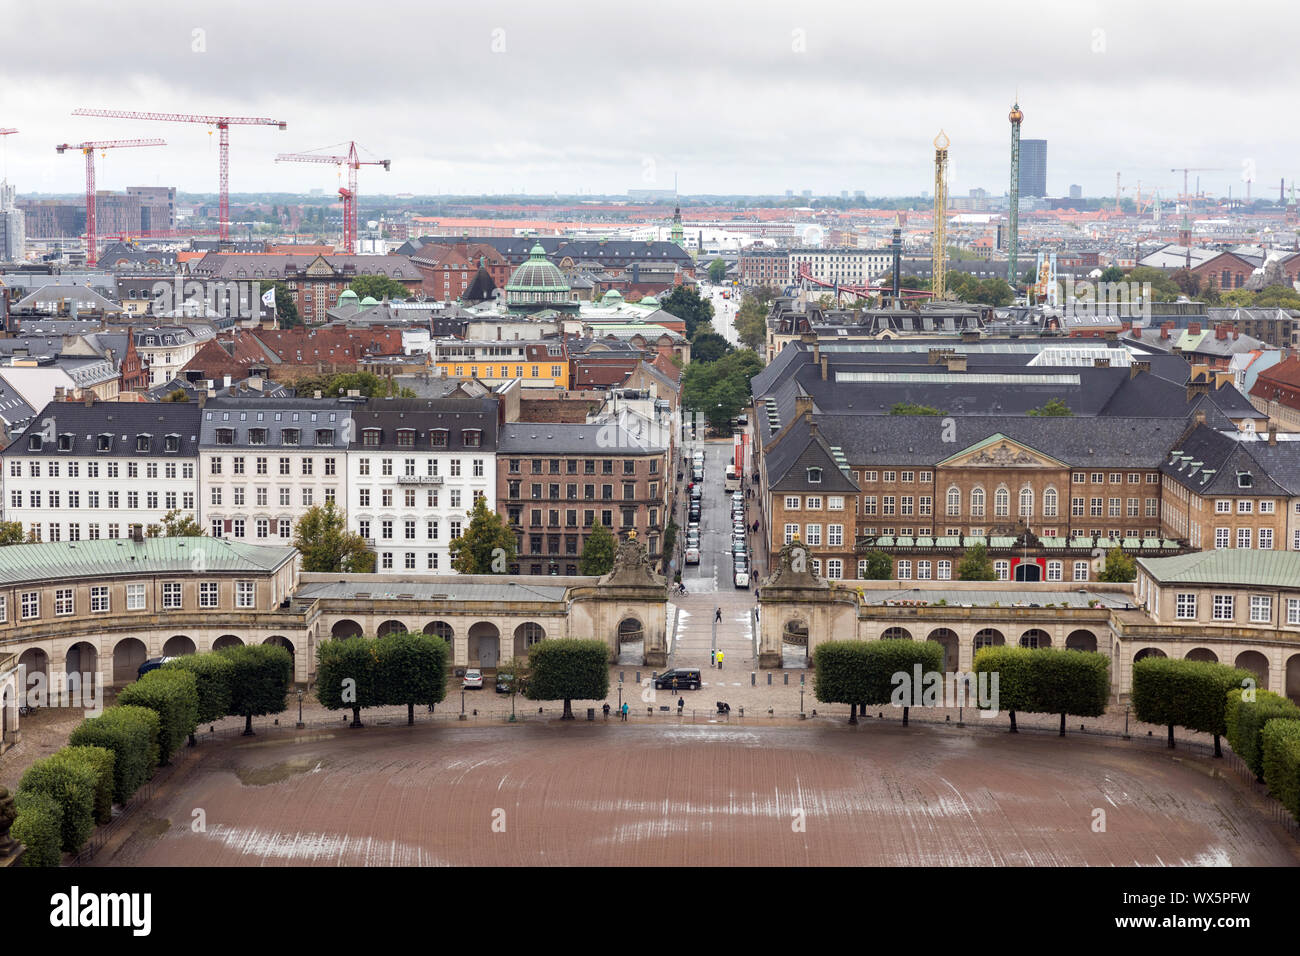 Lo skyline di Copenhagen, Danimarca, con il cantiere stabile del Palazzo Christiansborg in primo piano e le giostre di giardini di Tivoli (r) Foto Stock